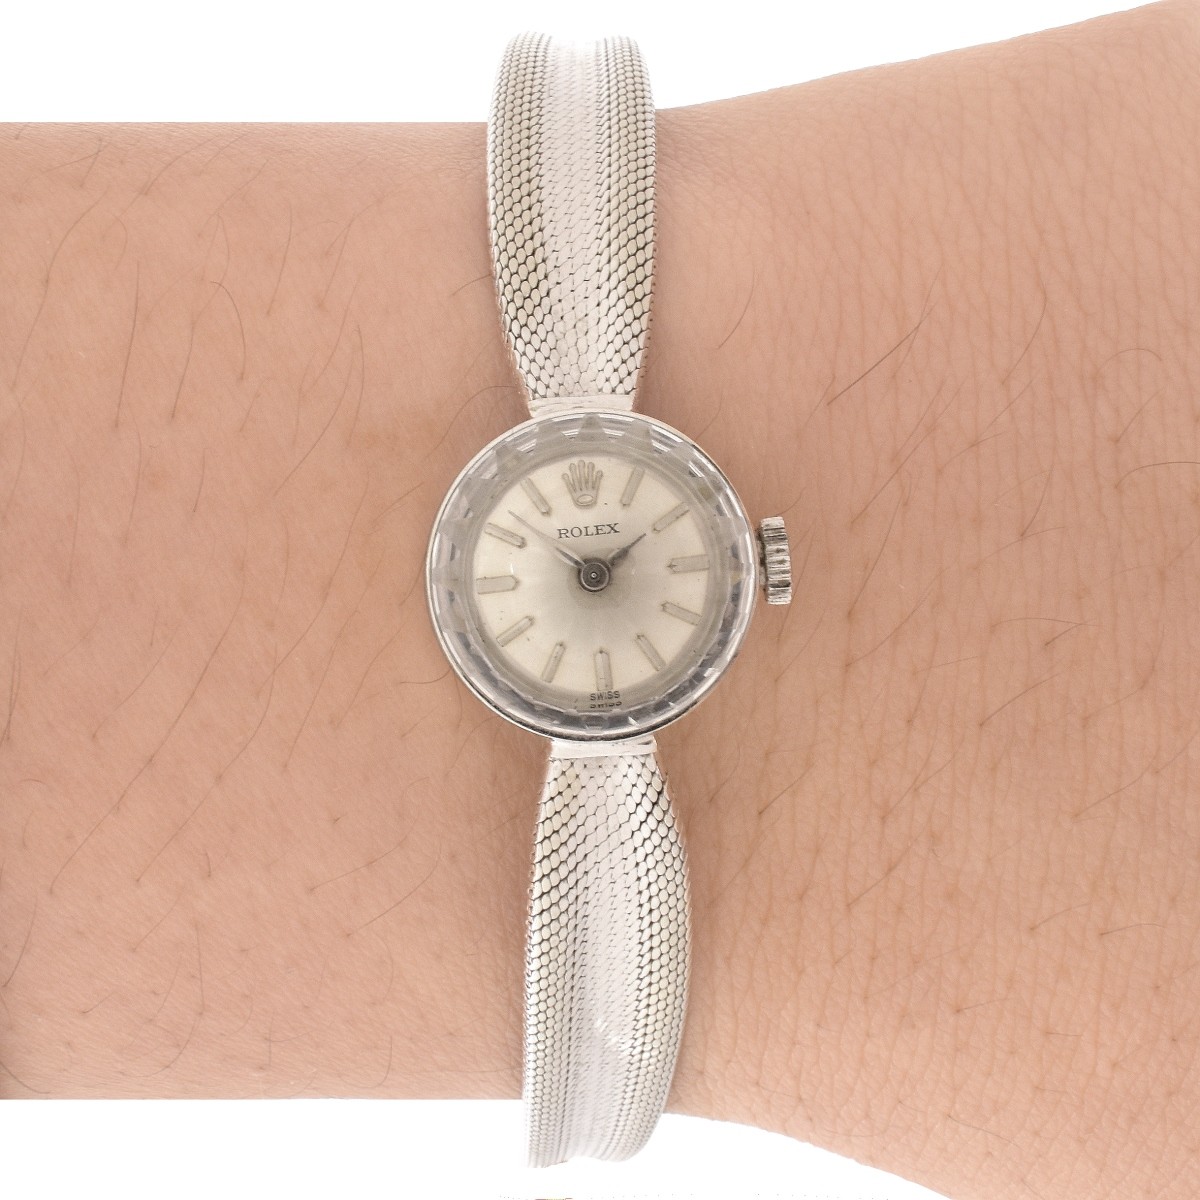 Lady's Rolex 14K Watch